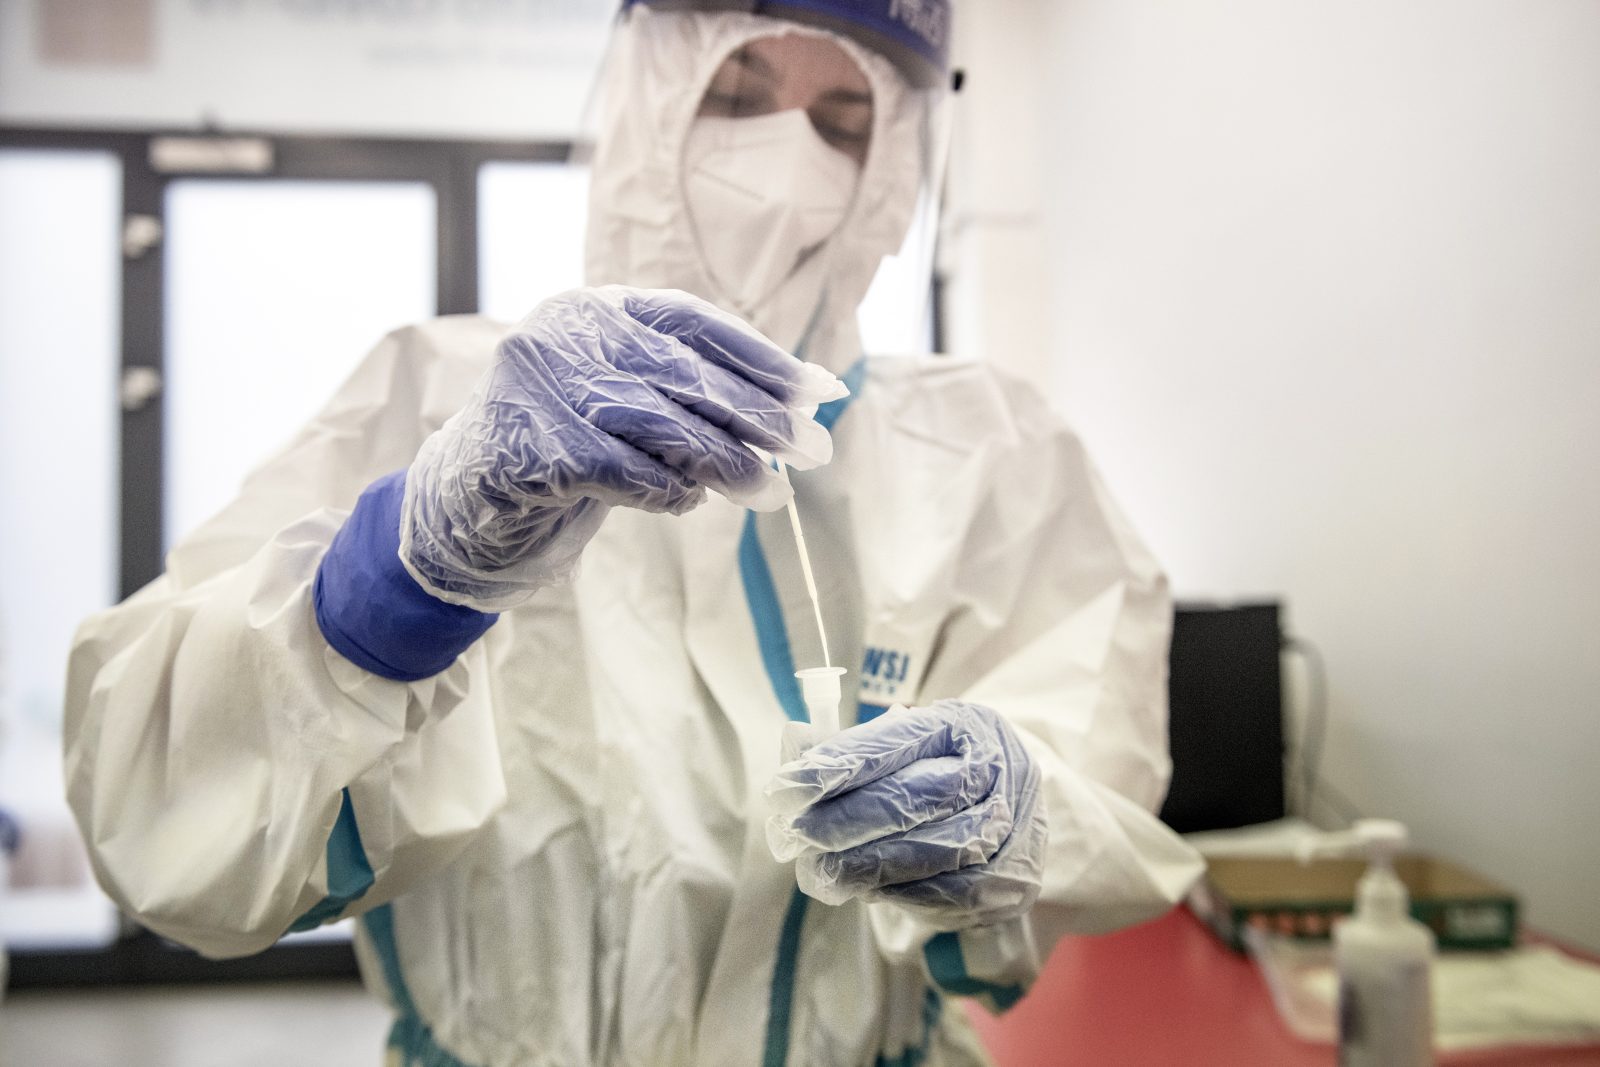 Je tu velmi silná indicie.' Laboratoř v Česku má podezření, že odhalila nakažlivější mutaci koronaviru | iROZHLAS - spolehlivé zprávy